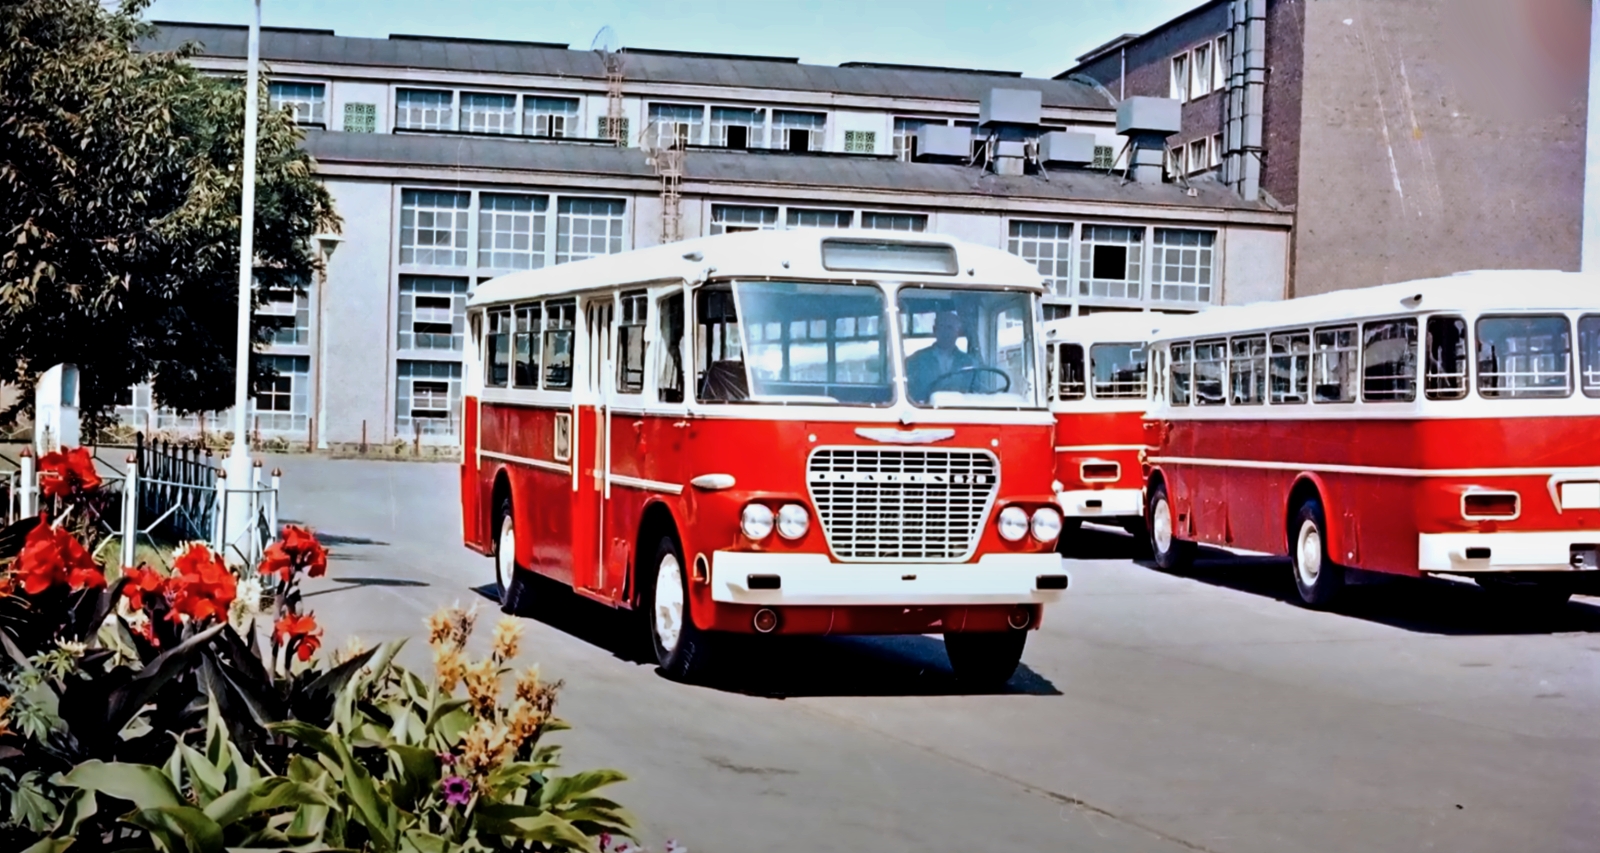 Ikarus 620
Podobna wersja, jak dla Polski, ale to ruskie autobusy.
Słowa kluczowe: IK620 1964